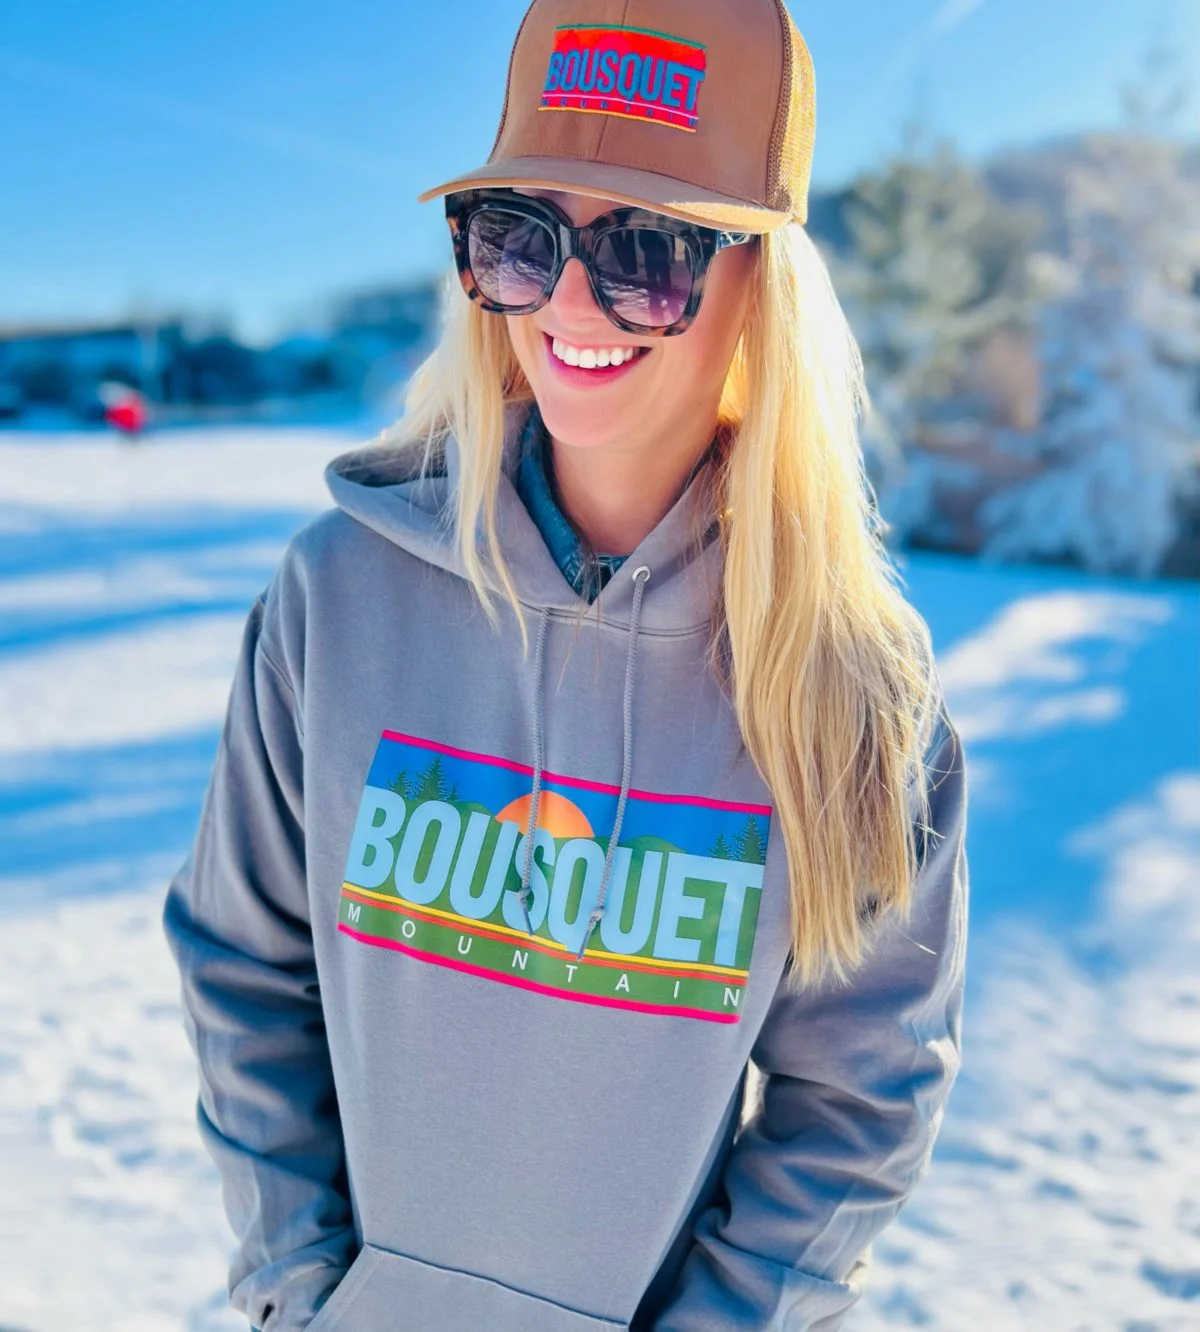 Bousquet Mountain Sweatshirt